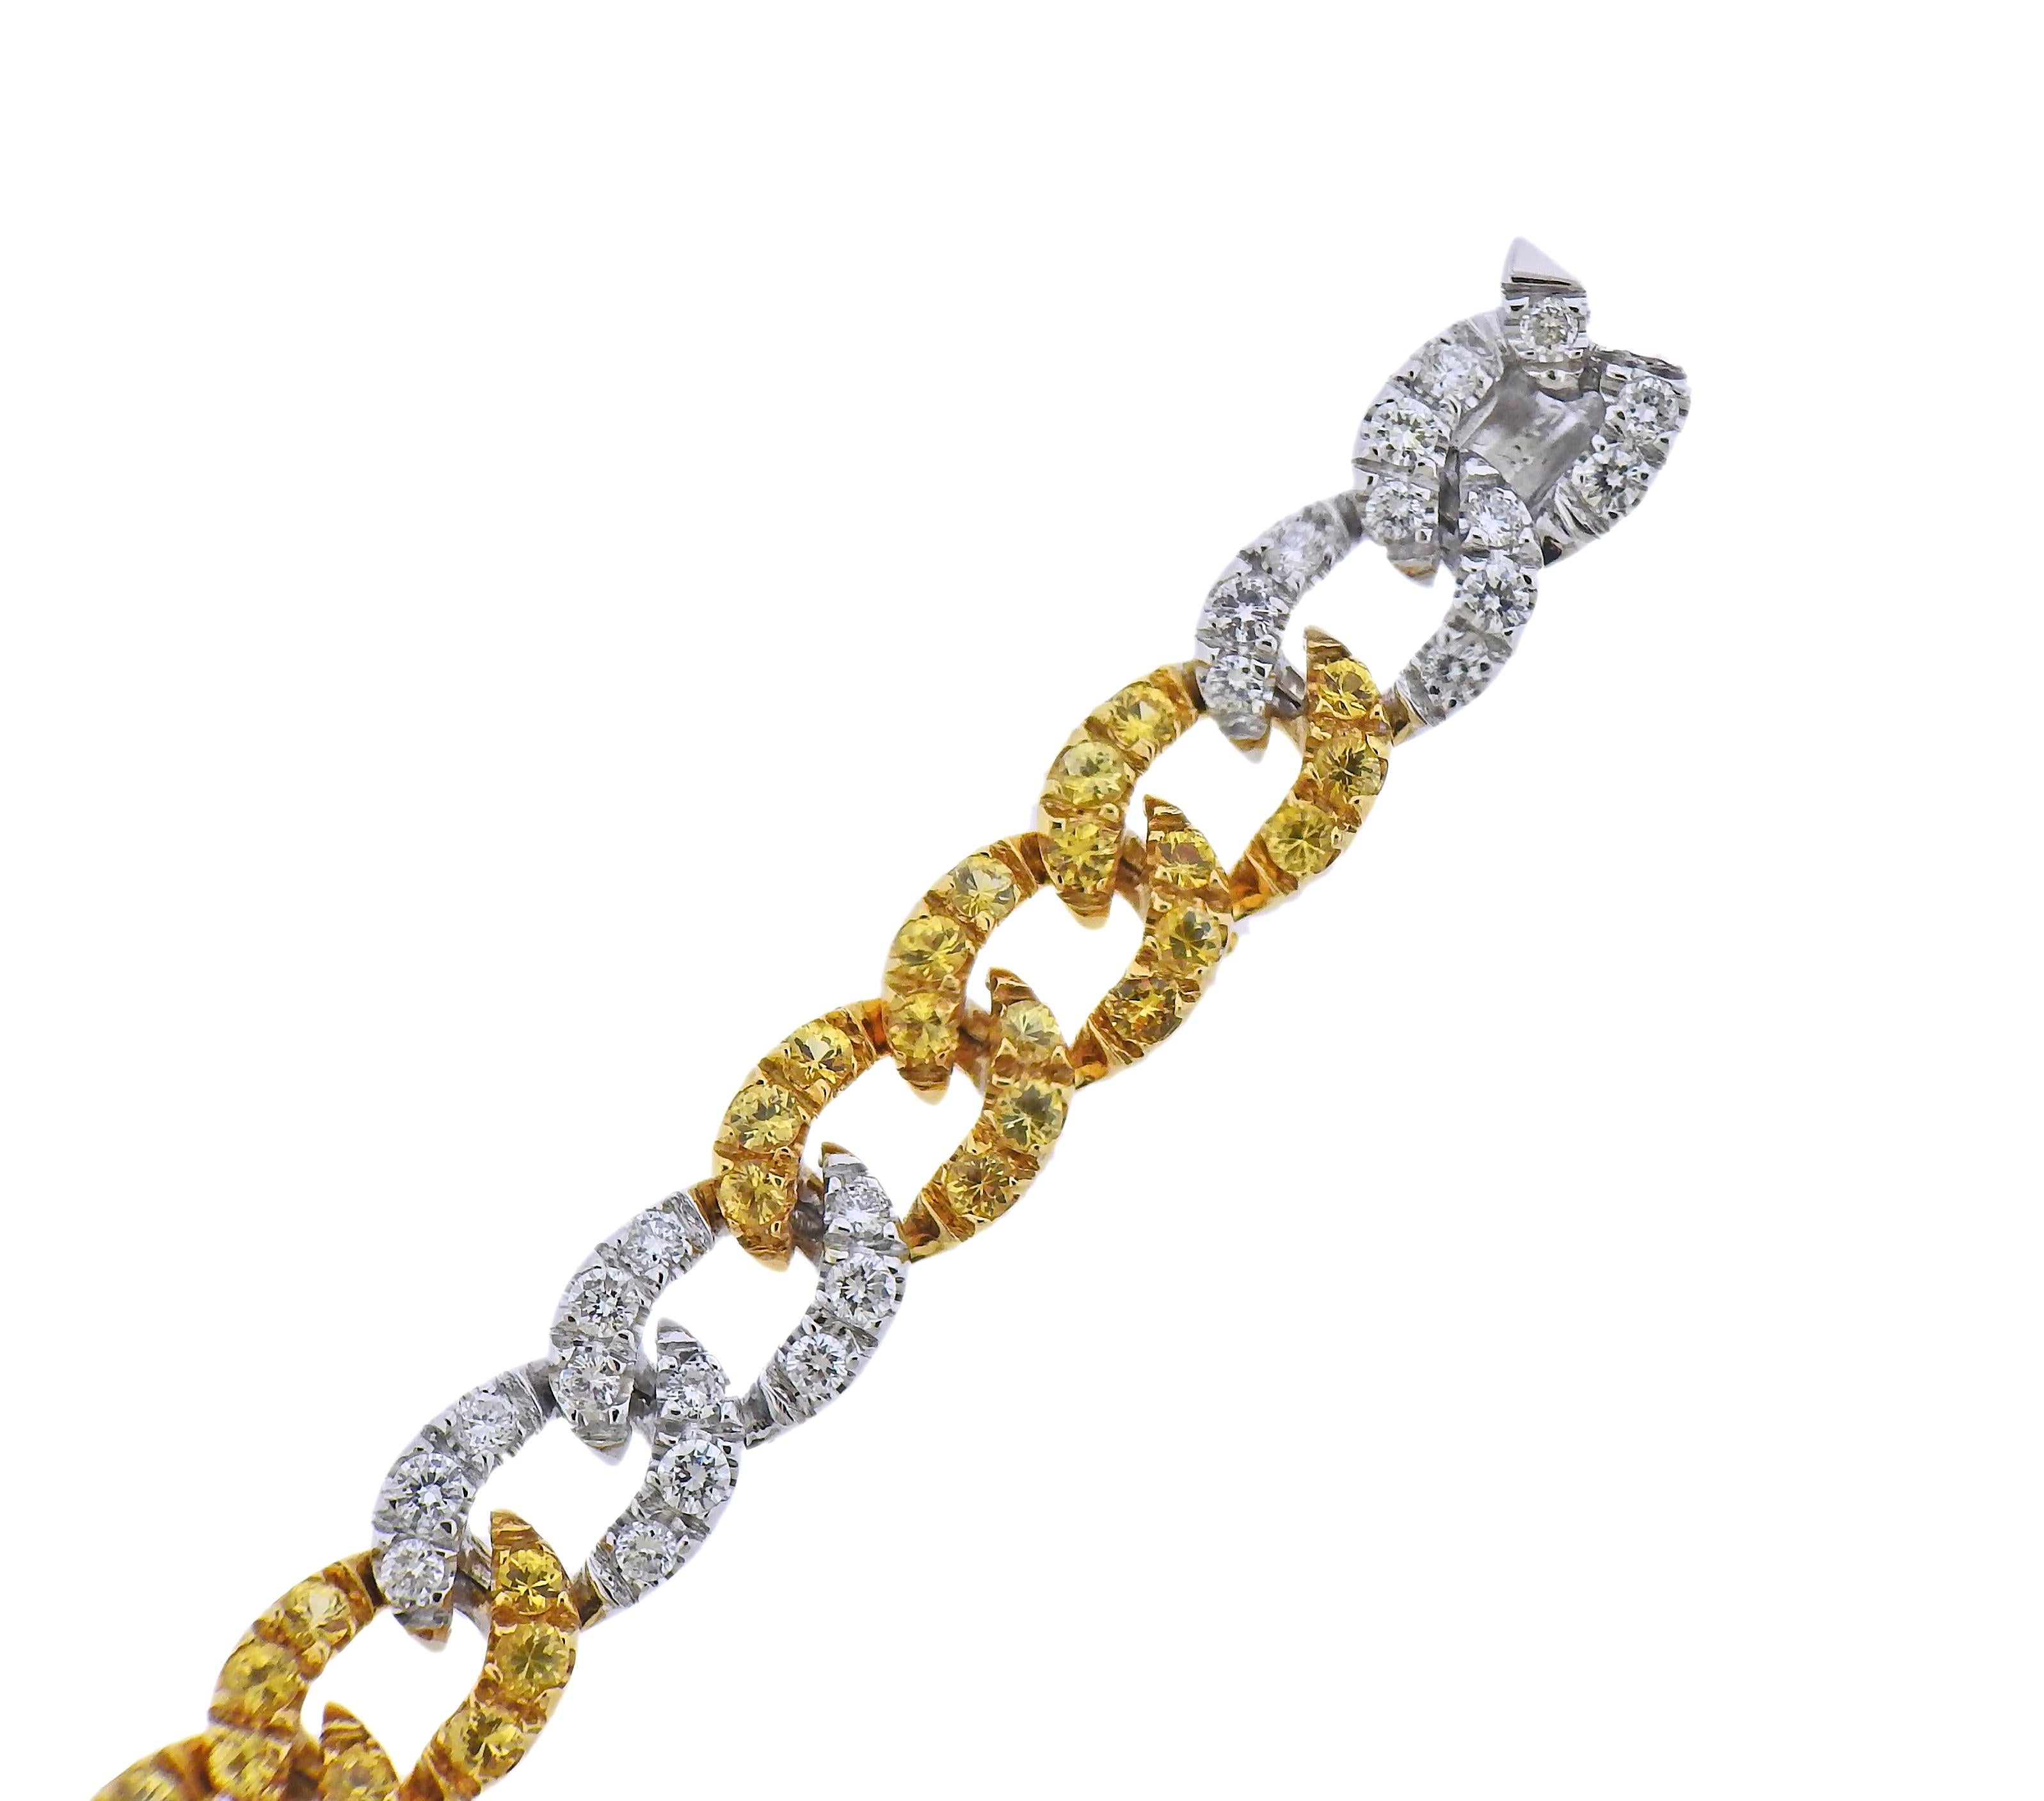 Bracelet en or 18k signé par Curnis, avec saphirs jaunes et environ 2,50ctw de diamants. Le bracelet mesure 6 7/8